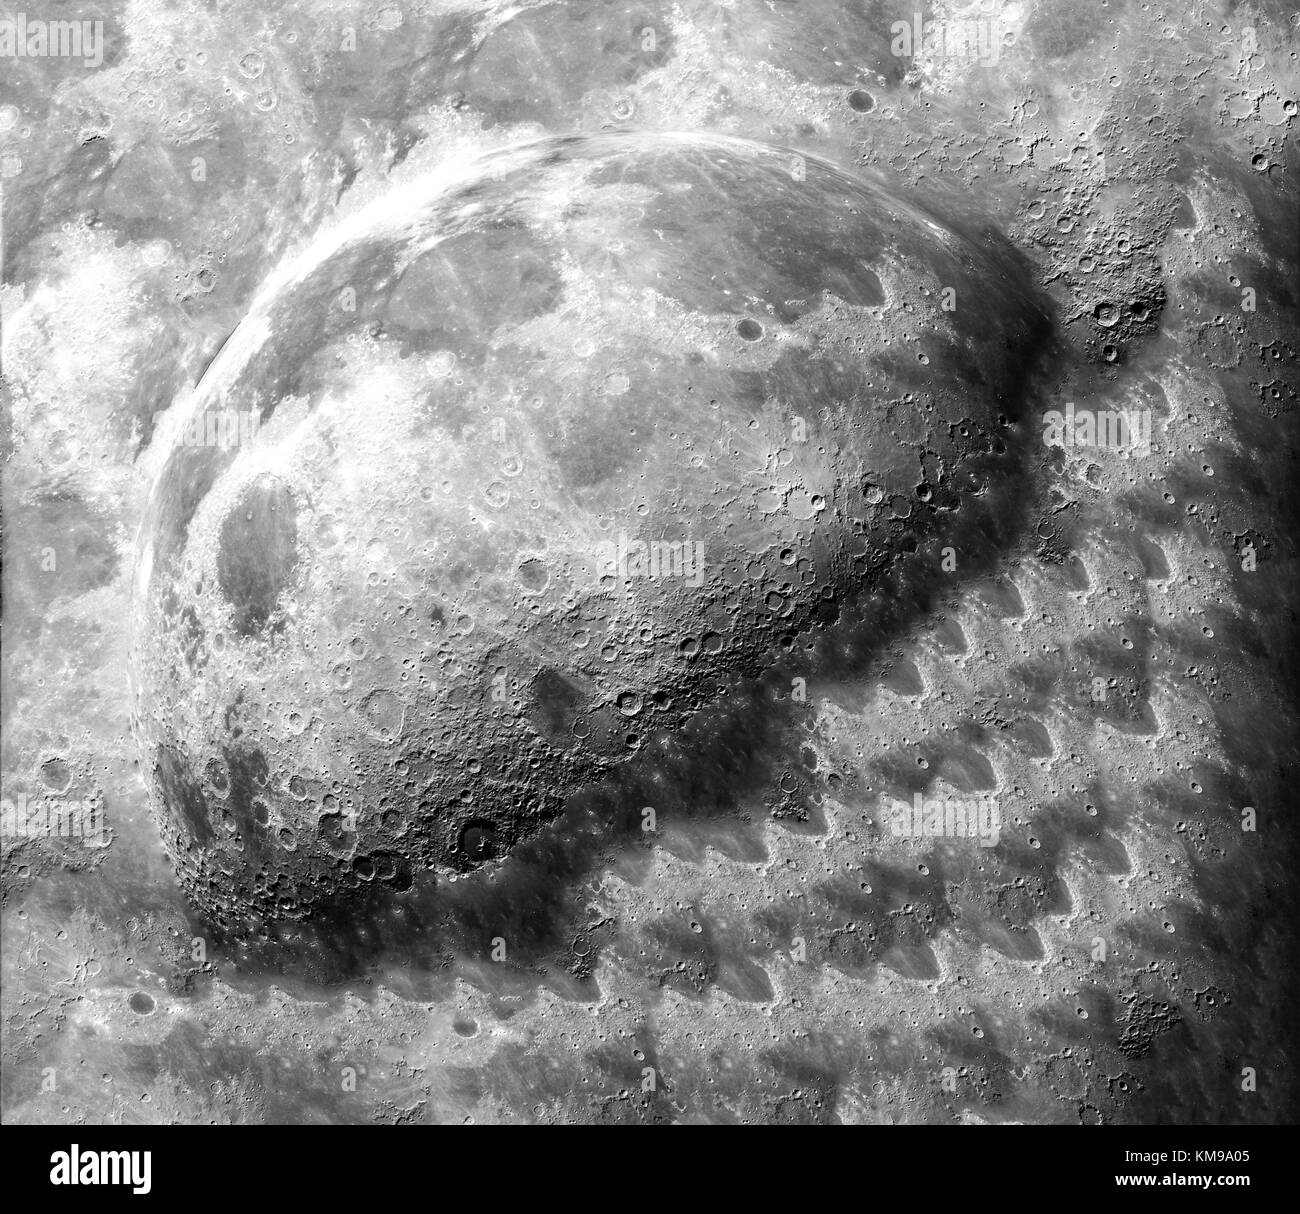 Le spectacle de la demi-lune sur la surface de la terre après l'impact, les éléments de cette image fournie par la NASA Banque D'Images